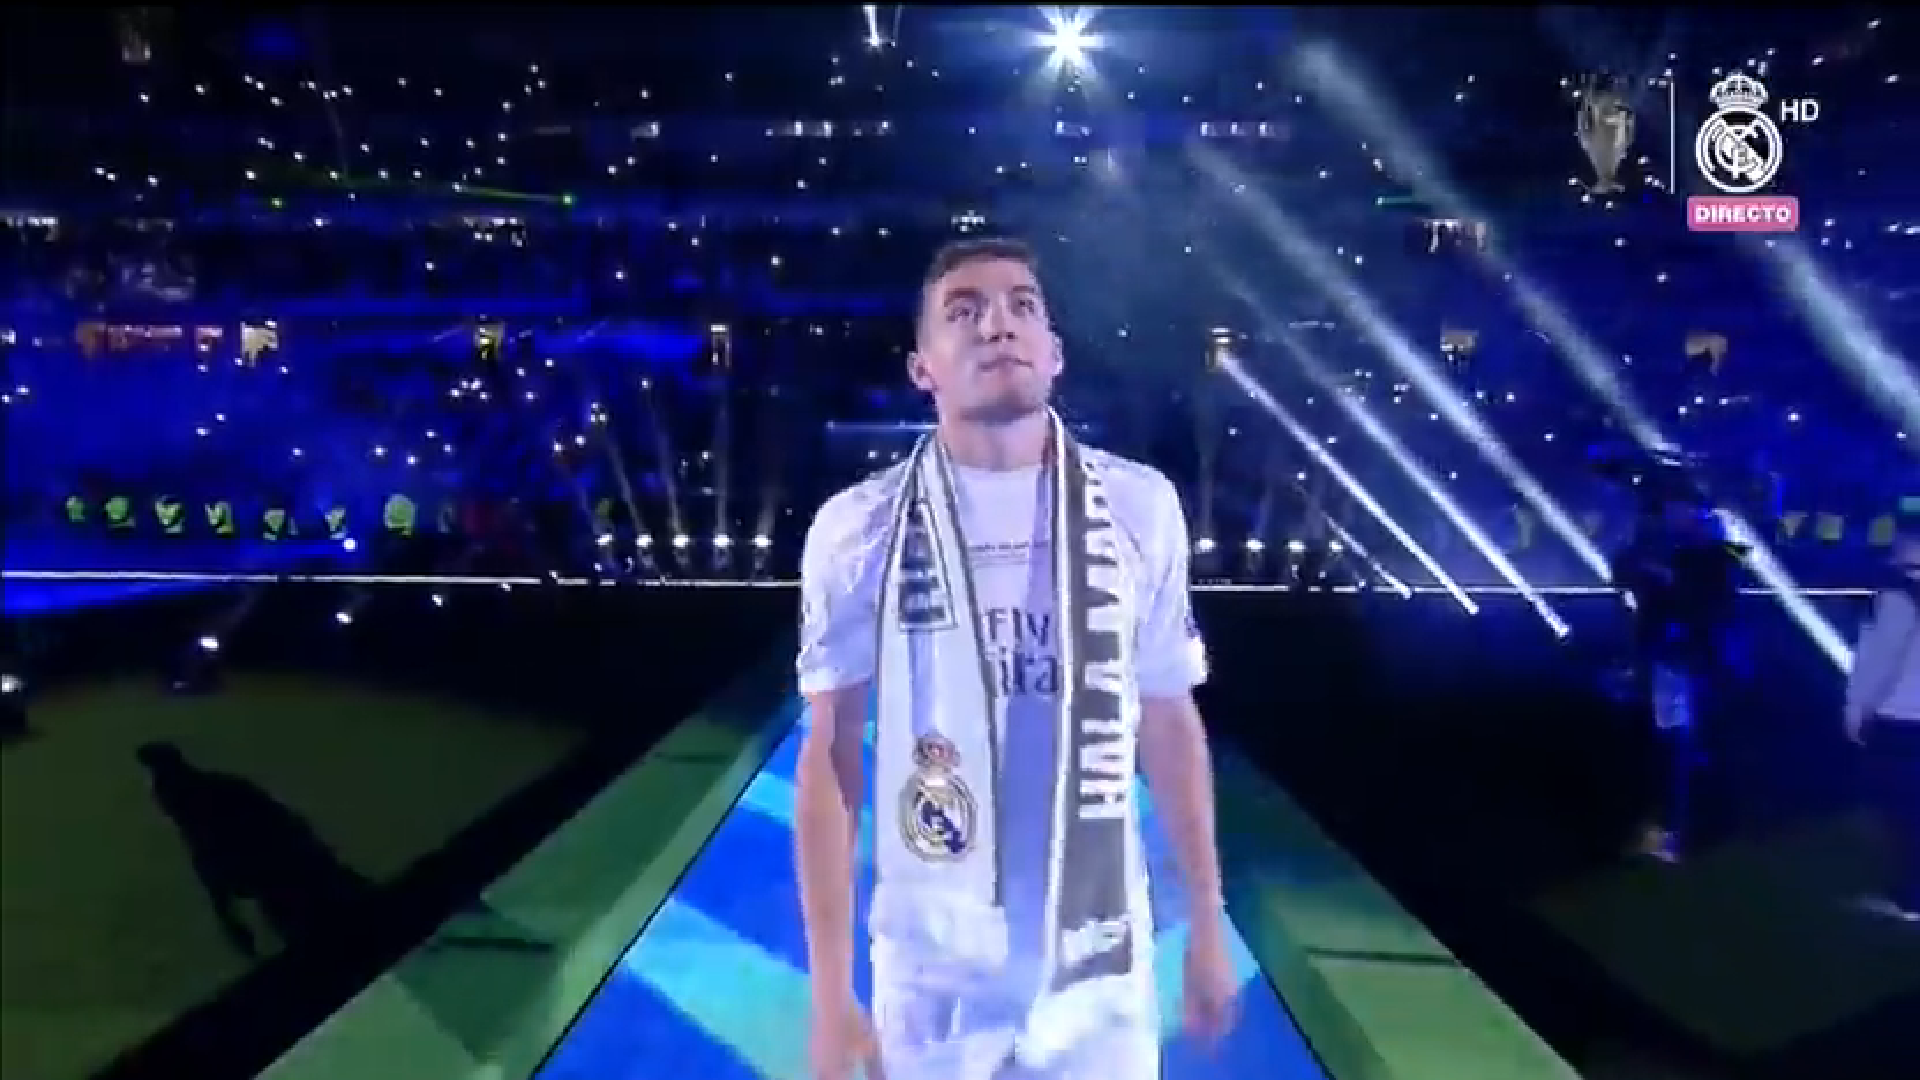 Ludnica preselila na Bernabéu: Ronaldo zapjevao s navijačima